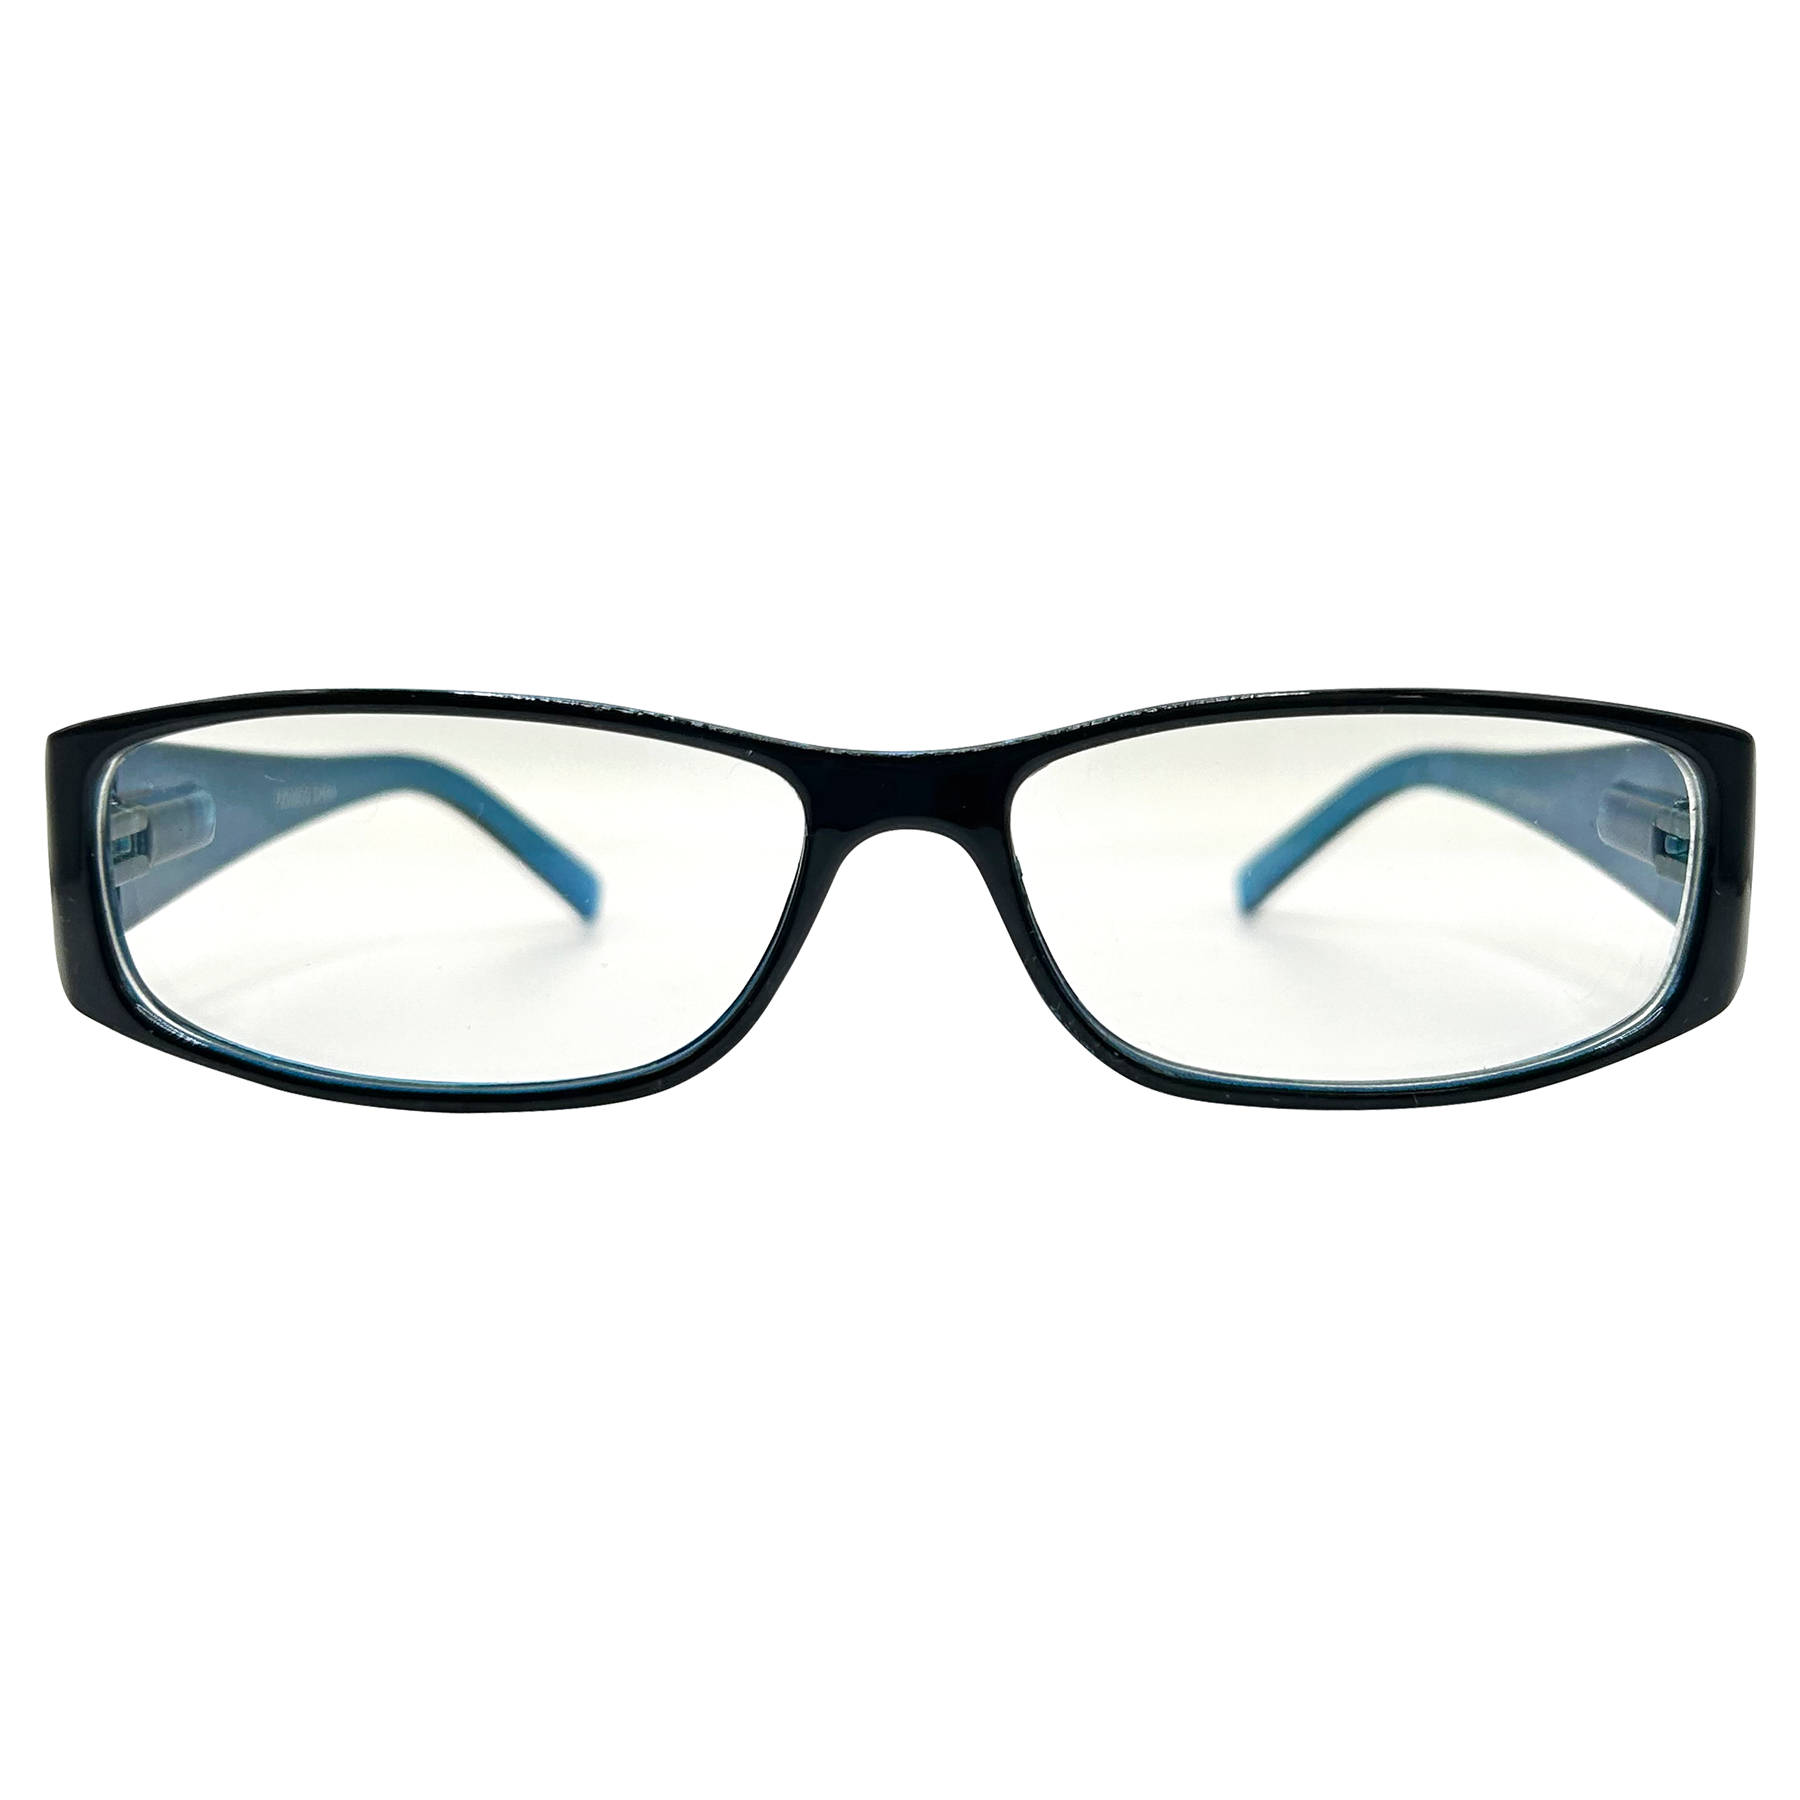 HI MY NAME IS Bayonetta-Style Clear Glasses